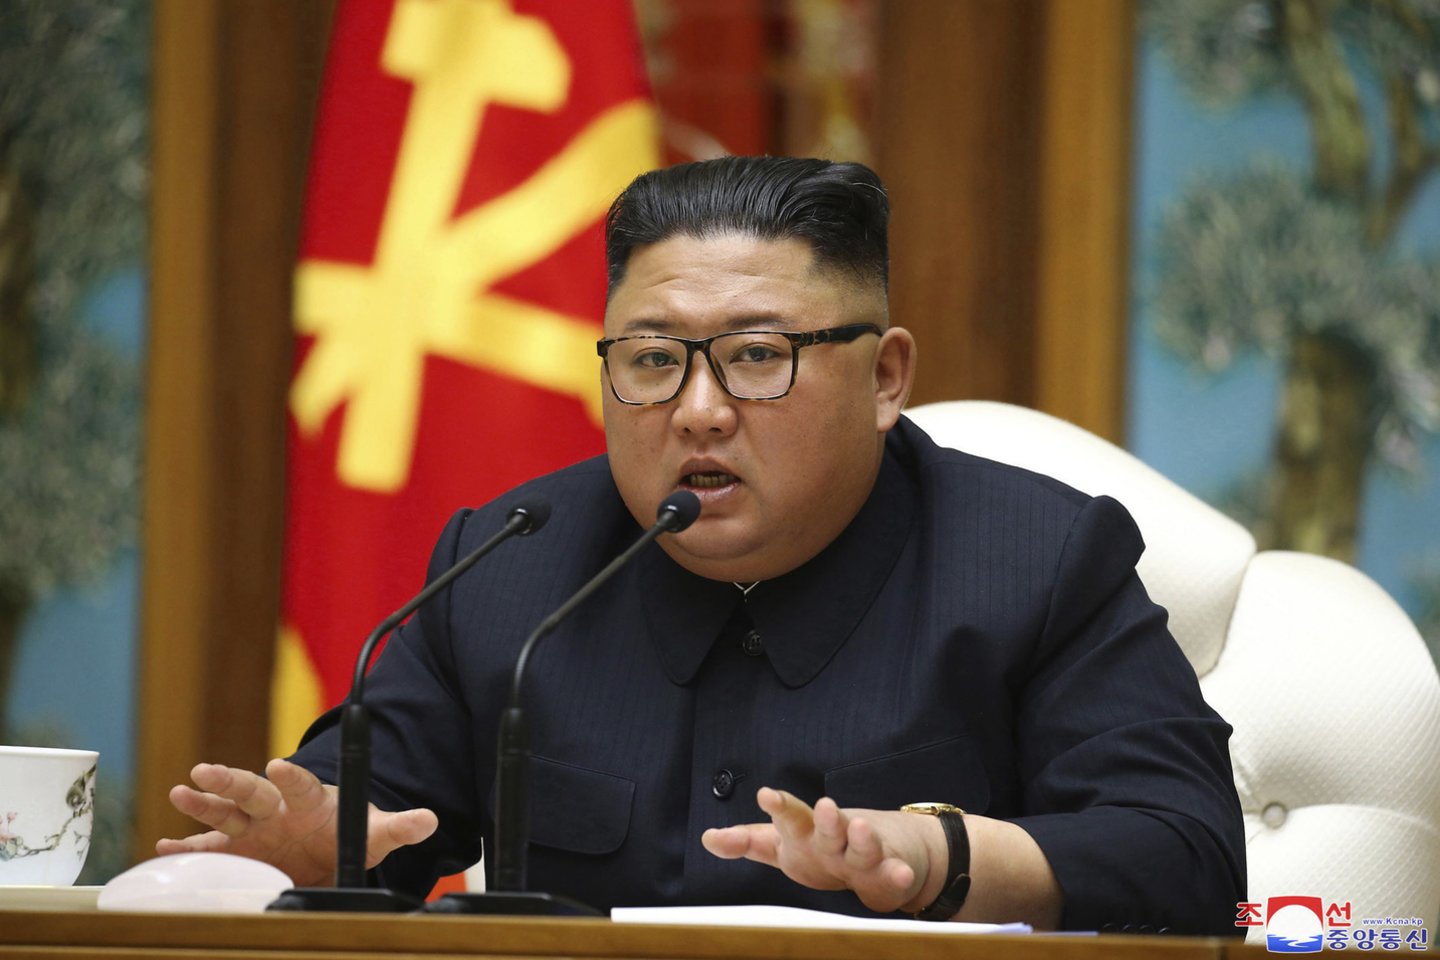 Sklandant įvairiems gandams apie Šiaurės Korėjos lyderio sveikatą, Kim Jong Unui greičiausiai priklausantis traukinys buvo pastebėtas pajūrio kurorte rytinėje šalies dalyje, parodė autoritetingos JAV svetainės „38 North“ palydovinės nuotraukos.<br>AP/Scanpix nuotr.